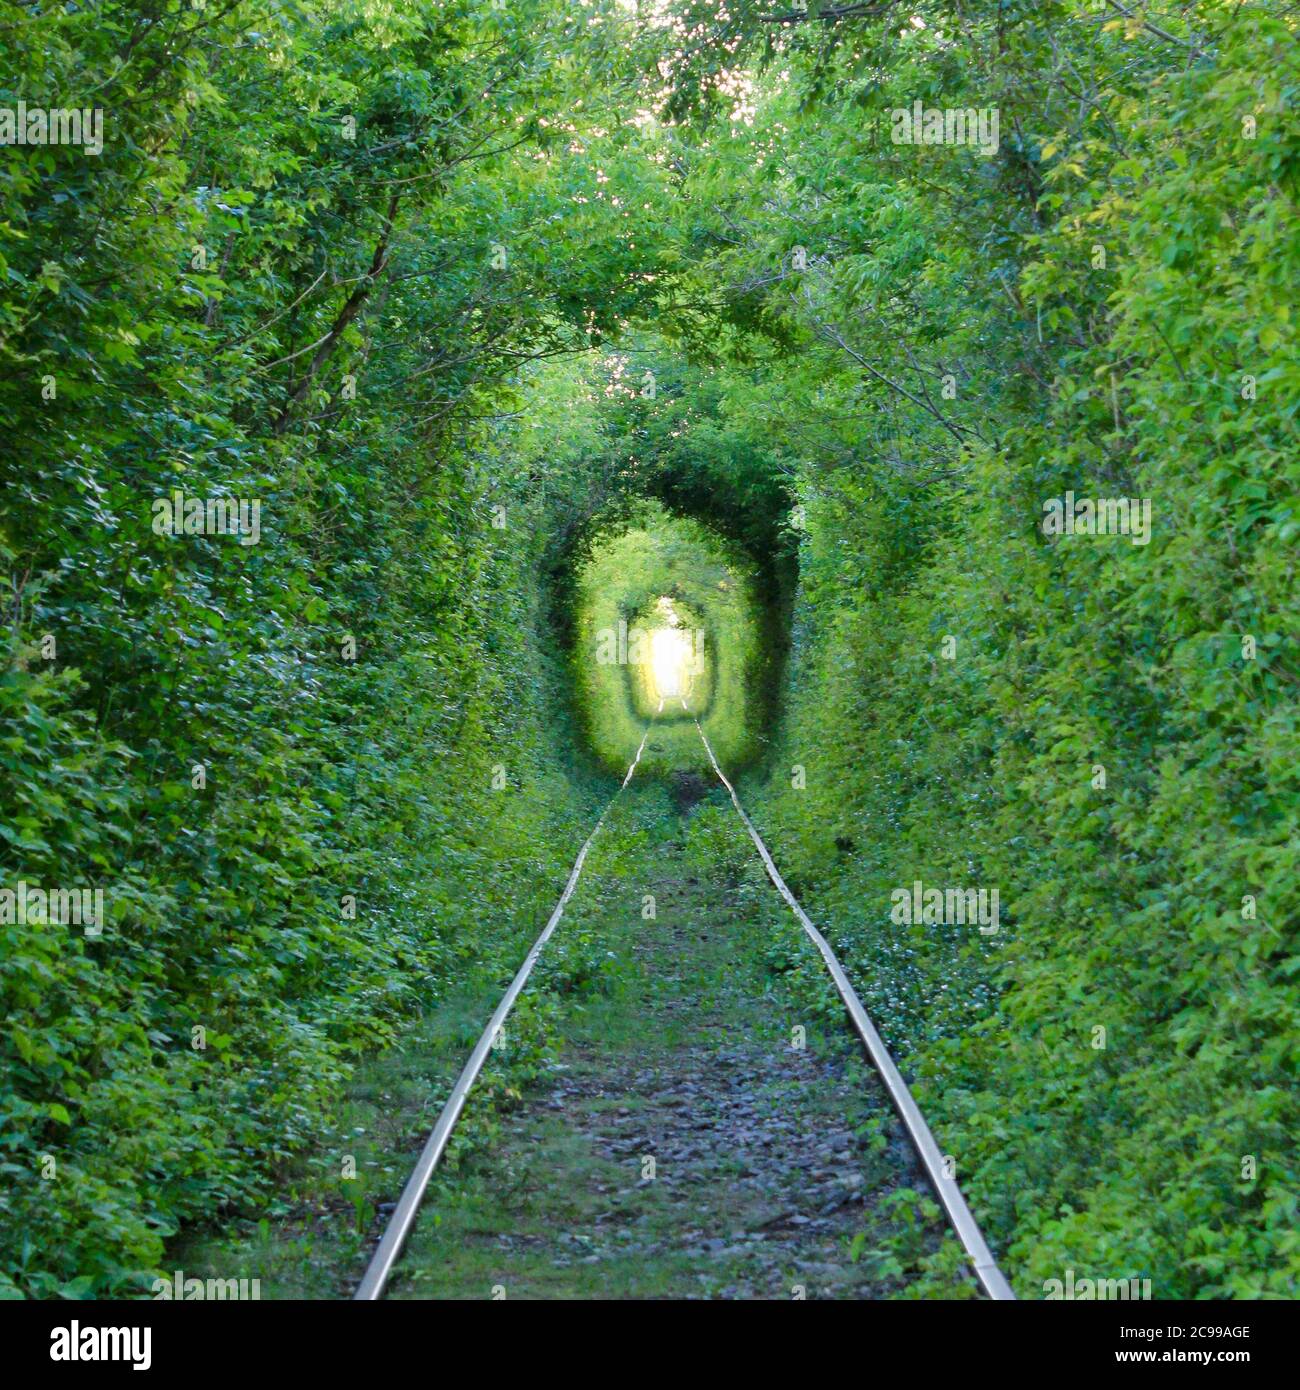 El túnel del Amor. Maravillas de la naturaleza. Un arco natural formado por árboles entrelazados sobre un ferrocarril. Arco de túnel verde de árboles en el bosque Foto de stock